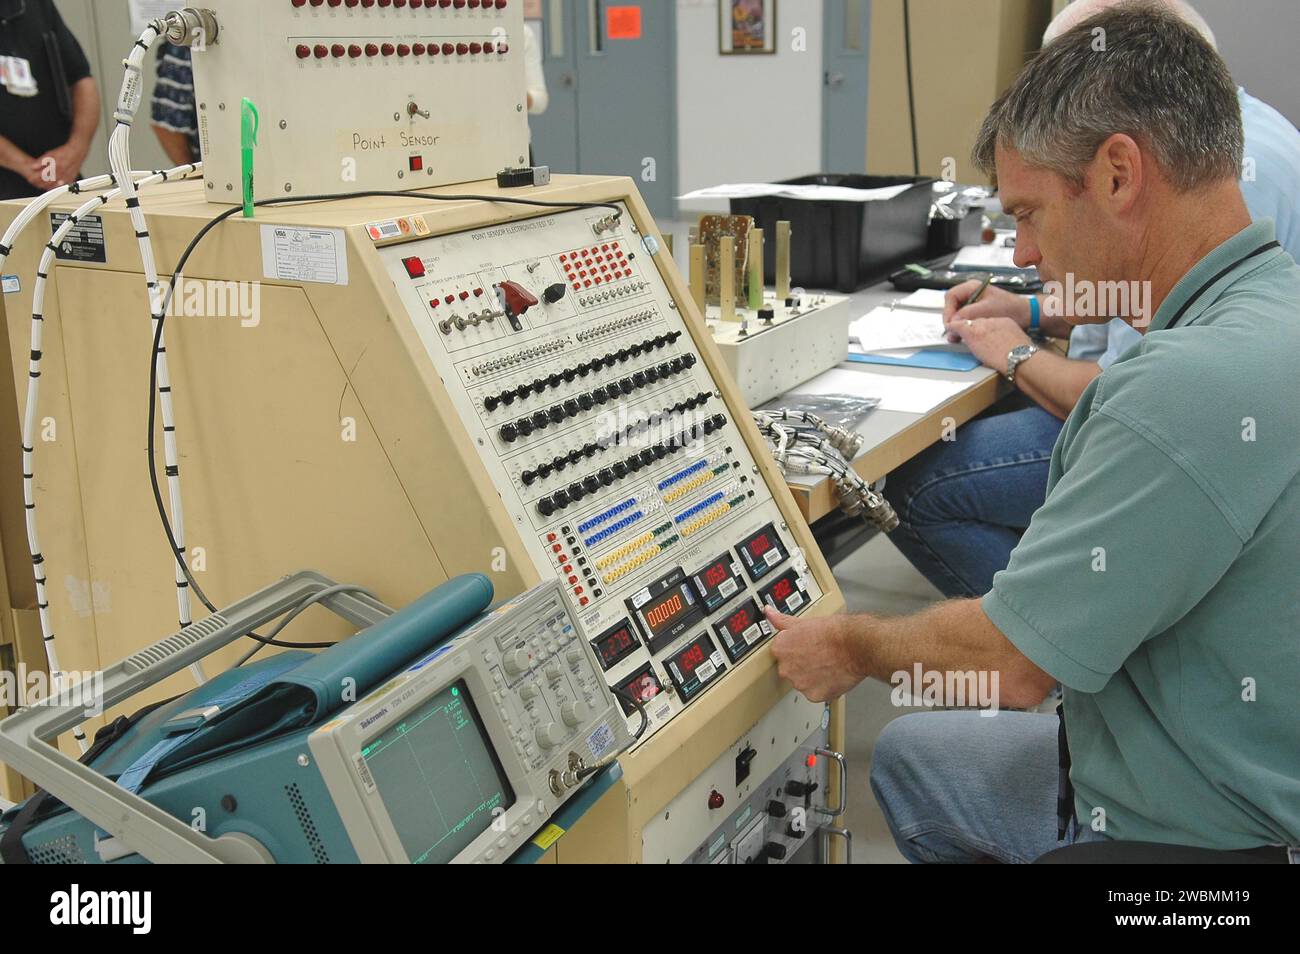 RAUMFAHRTZENTRUM KENNEDY, FLA. - Gary King, ein Prüftechniker, hilft bei der Prüfung elektronischer Komponenten im Zusammenhang mit den fehlerhaften Sensorwerten im Flüssigwasserstofftank-Absperrsensor. Der Sensor hat während des Starts am 13. Juli eine routinemäßige Überprüfung vor dem Start nicht bestanden, was dazu führte, dass Missionsmanager den ersten Startversuch des Discovery bereinigen mussten. Der Sensor schützt die Hauptmotoren des Shuttle, indem er deren Abschaltung auslöst, falls der Kraftstoff unerwartet niedrig ist. Der Sensor ist einer von vier im Bereich flüssigen Wasserstoff des externen Tanks (ET). Stockfoto